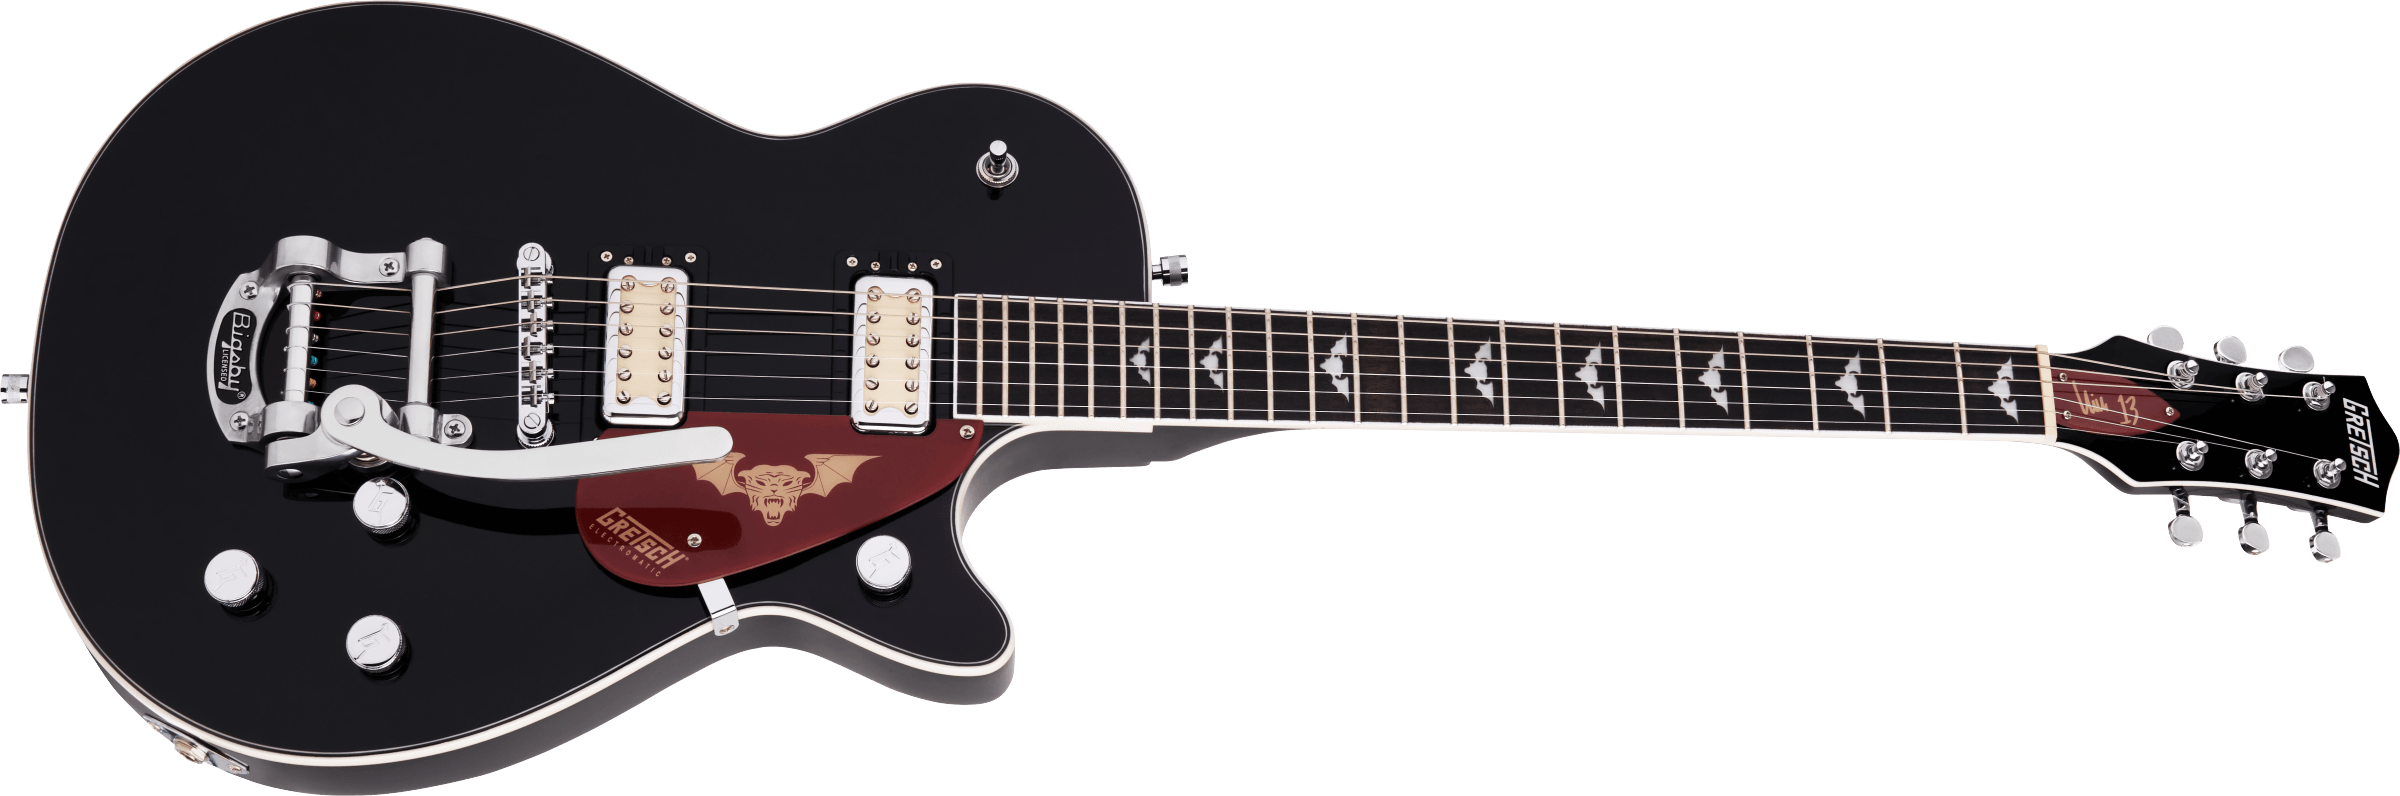 Gretsch G5230t Electromatic Jet Nick 13 Signature Bigsby Hh Trem Lau - Black - Enkel gesneden elektrische gitaar - Variation 2